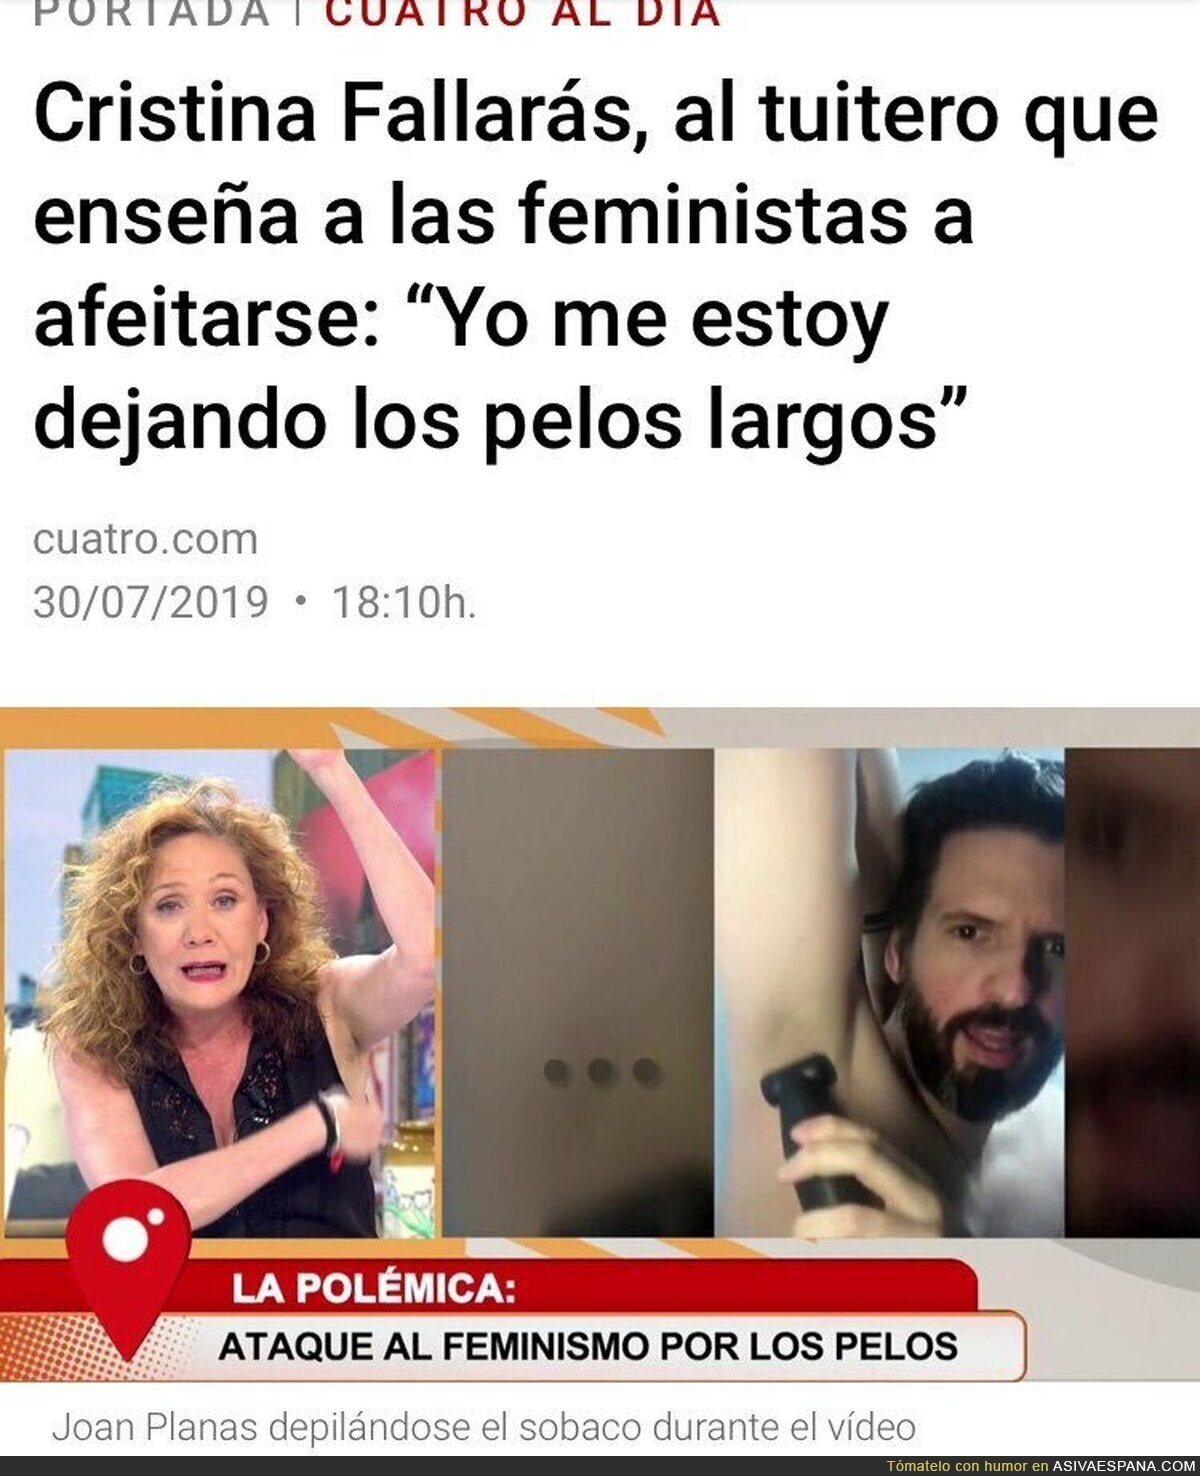 Así reivindica el feminismo la Cristina Fallarás